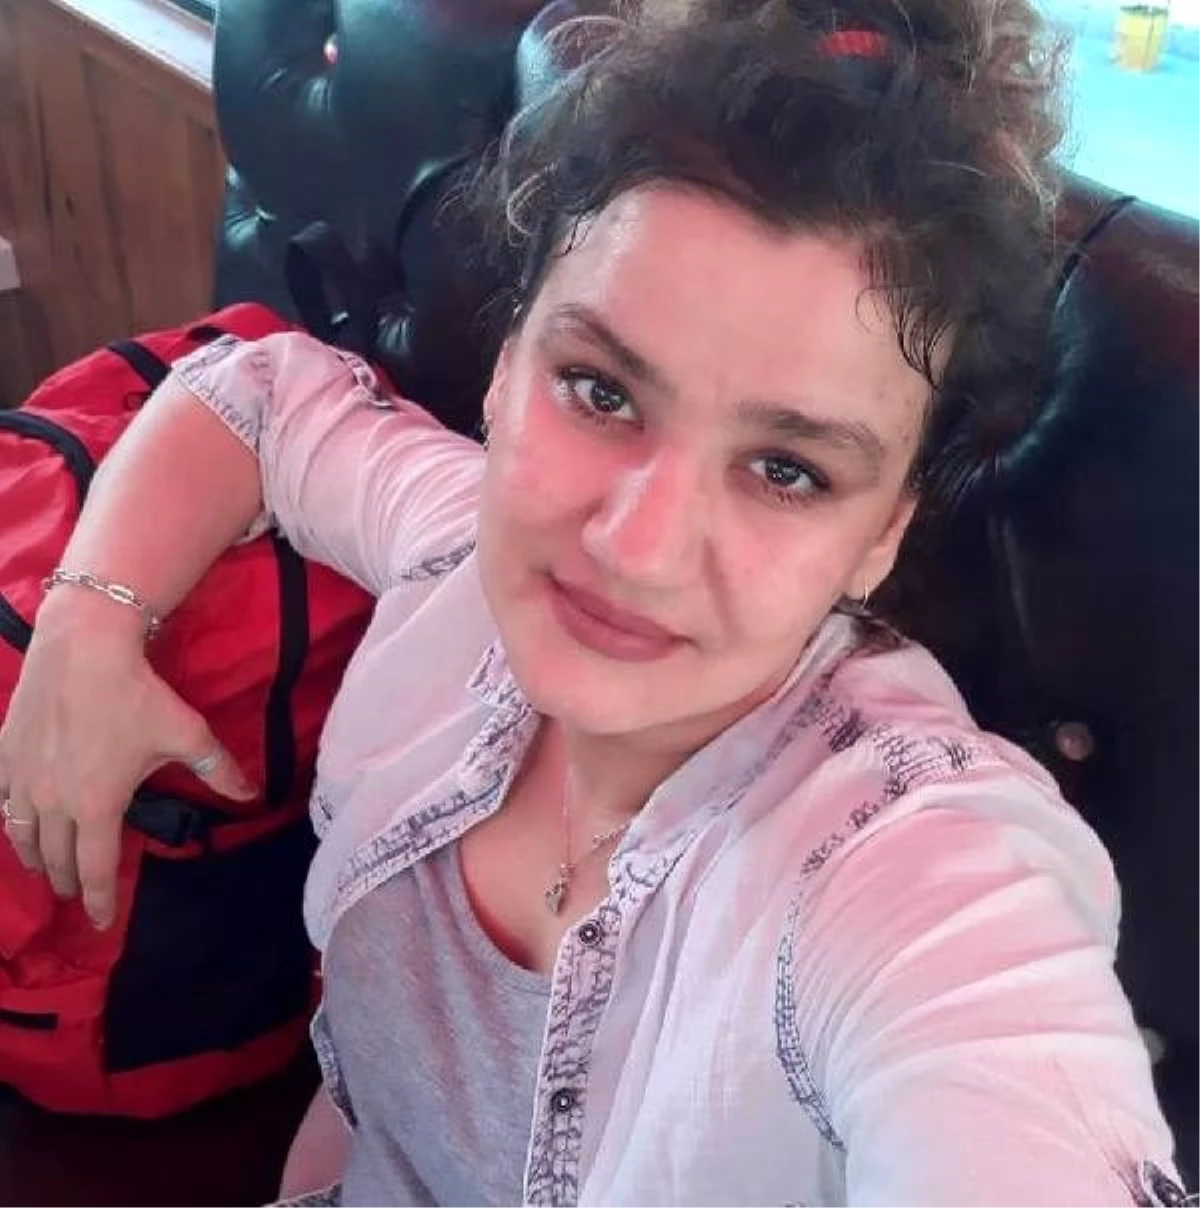 Tacikistanlı kadının cinayet zanlısı erkek arkadaşı kırmızı bültenle aranıyor